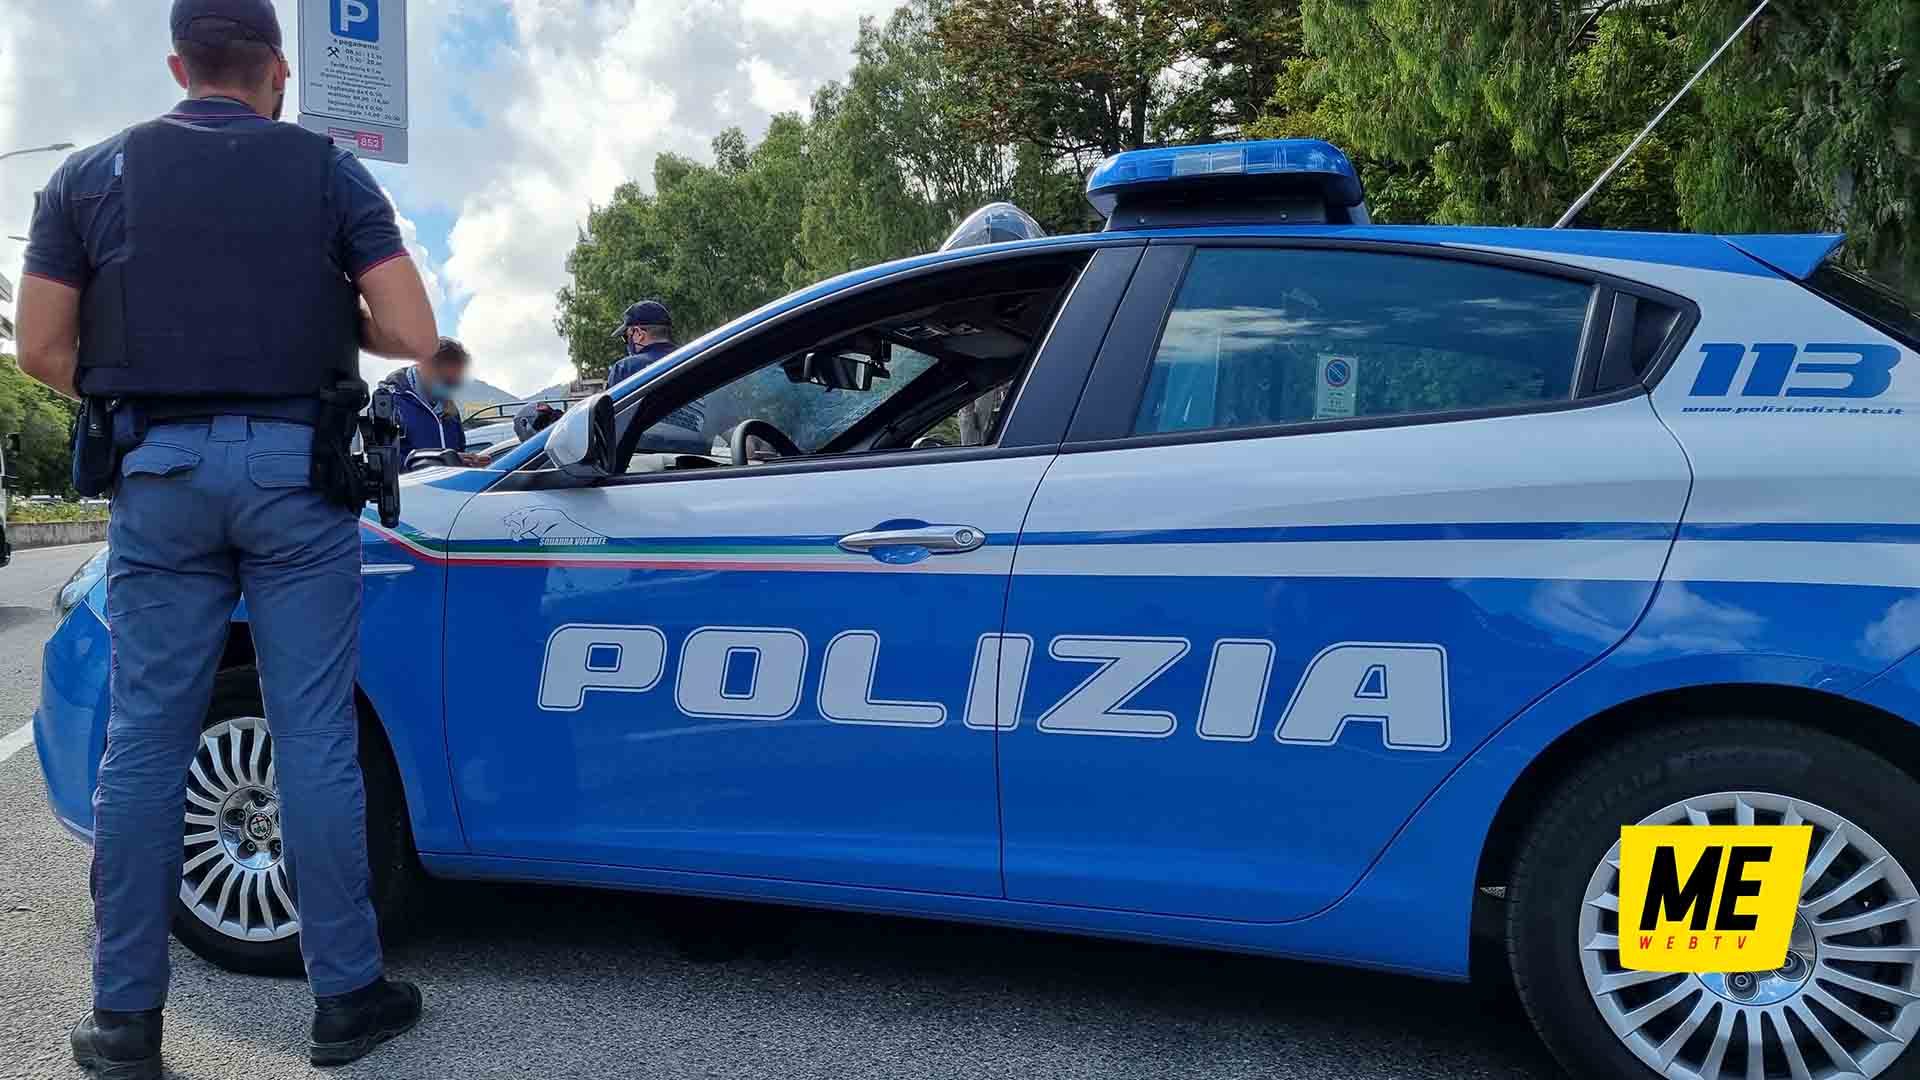 Polizia_MessinaWebTV_ Cronaca